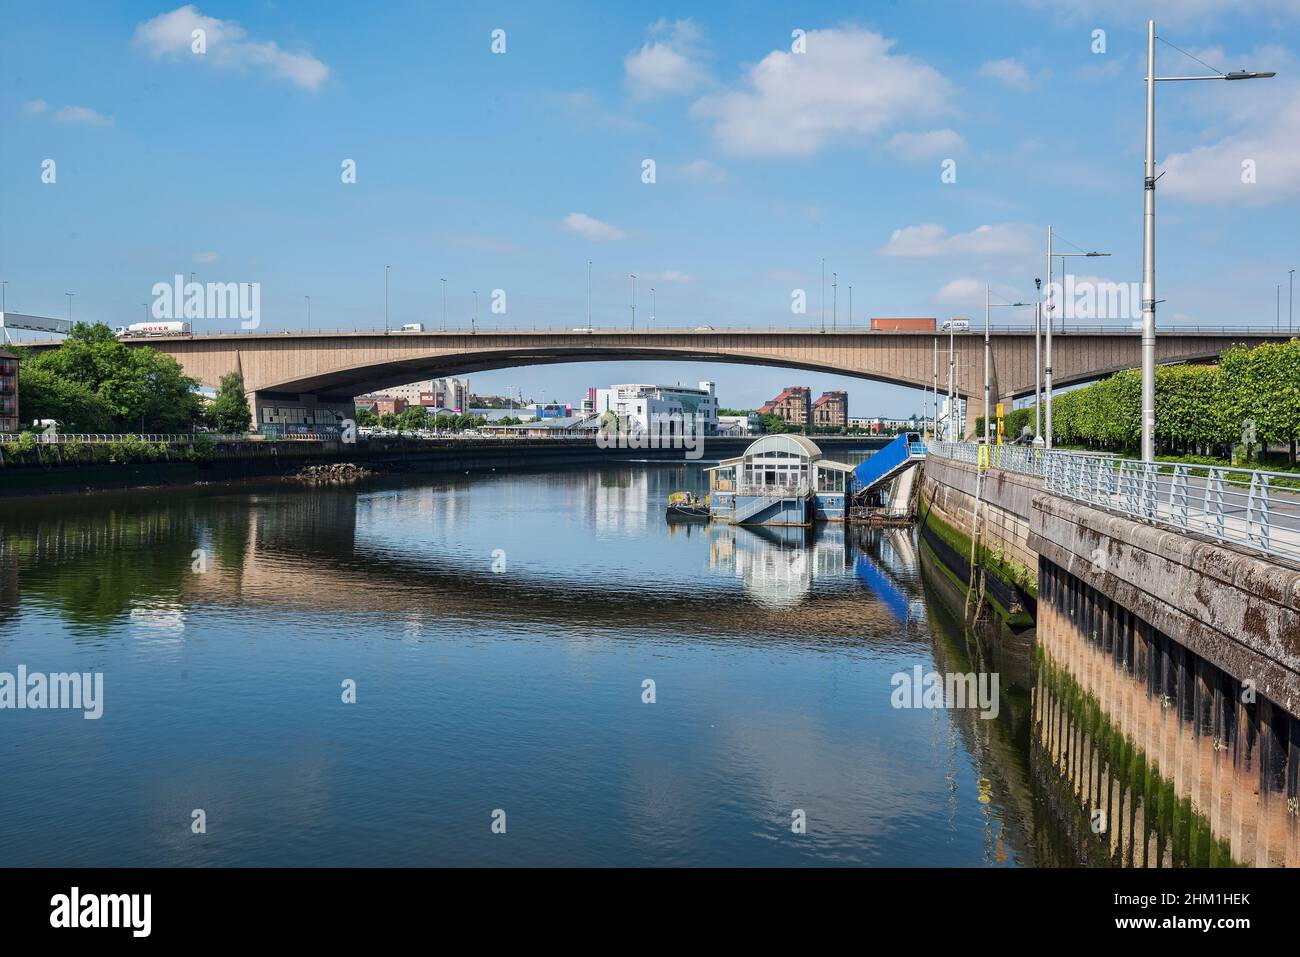 Vea a lo largo del río Clyde en Glasgow mostrando el puente de Kingston y el lugar de entretenimiento del ferry. Foto de stock